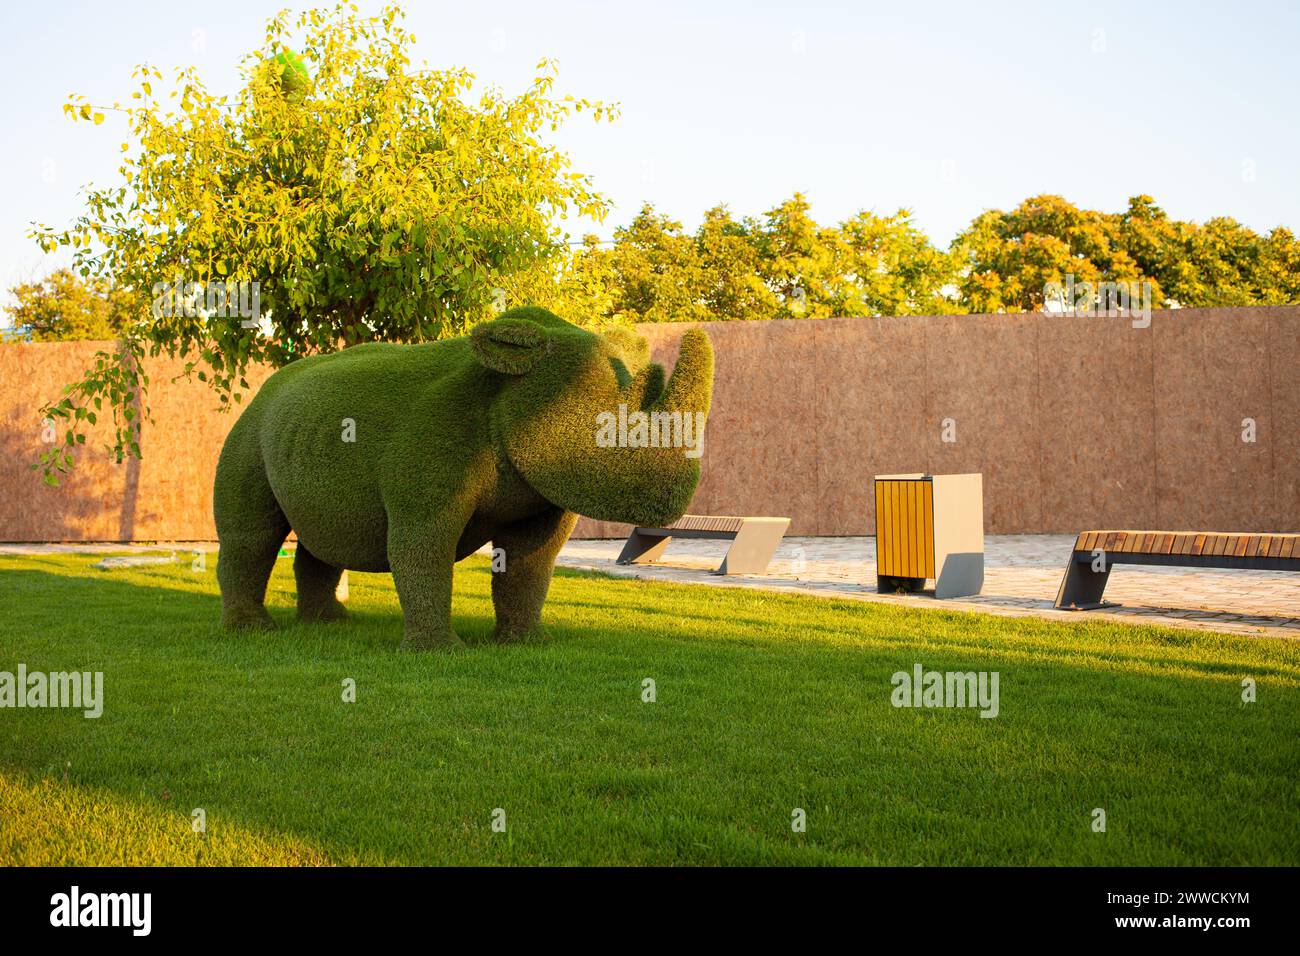 Hermoso rinoceronte hecho de hierba, diseño del paisaje, figuras de animales de arbustos. Césped cortado. de cerca Foto de stock